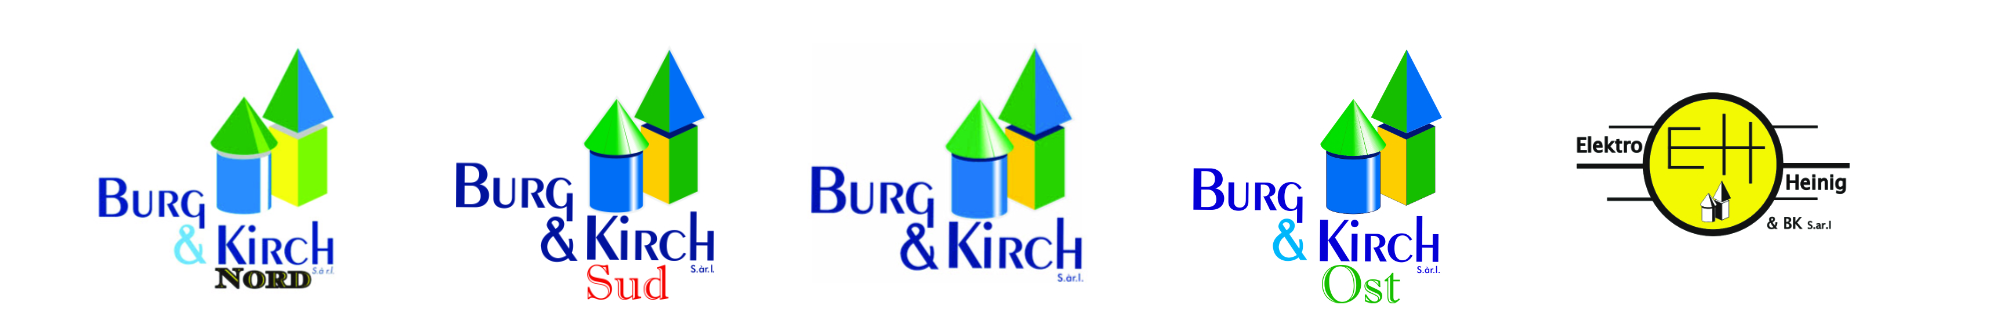 Burg & Kirch